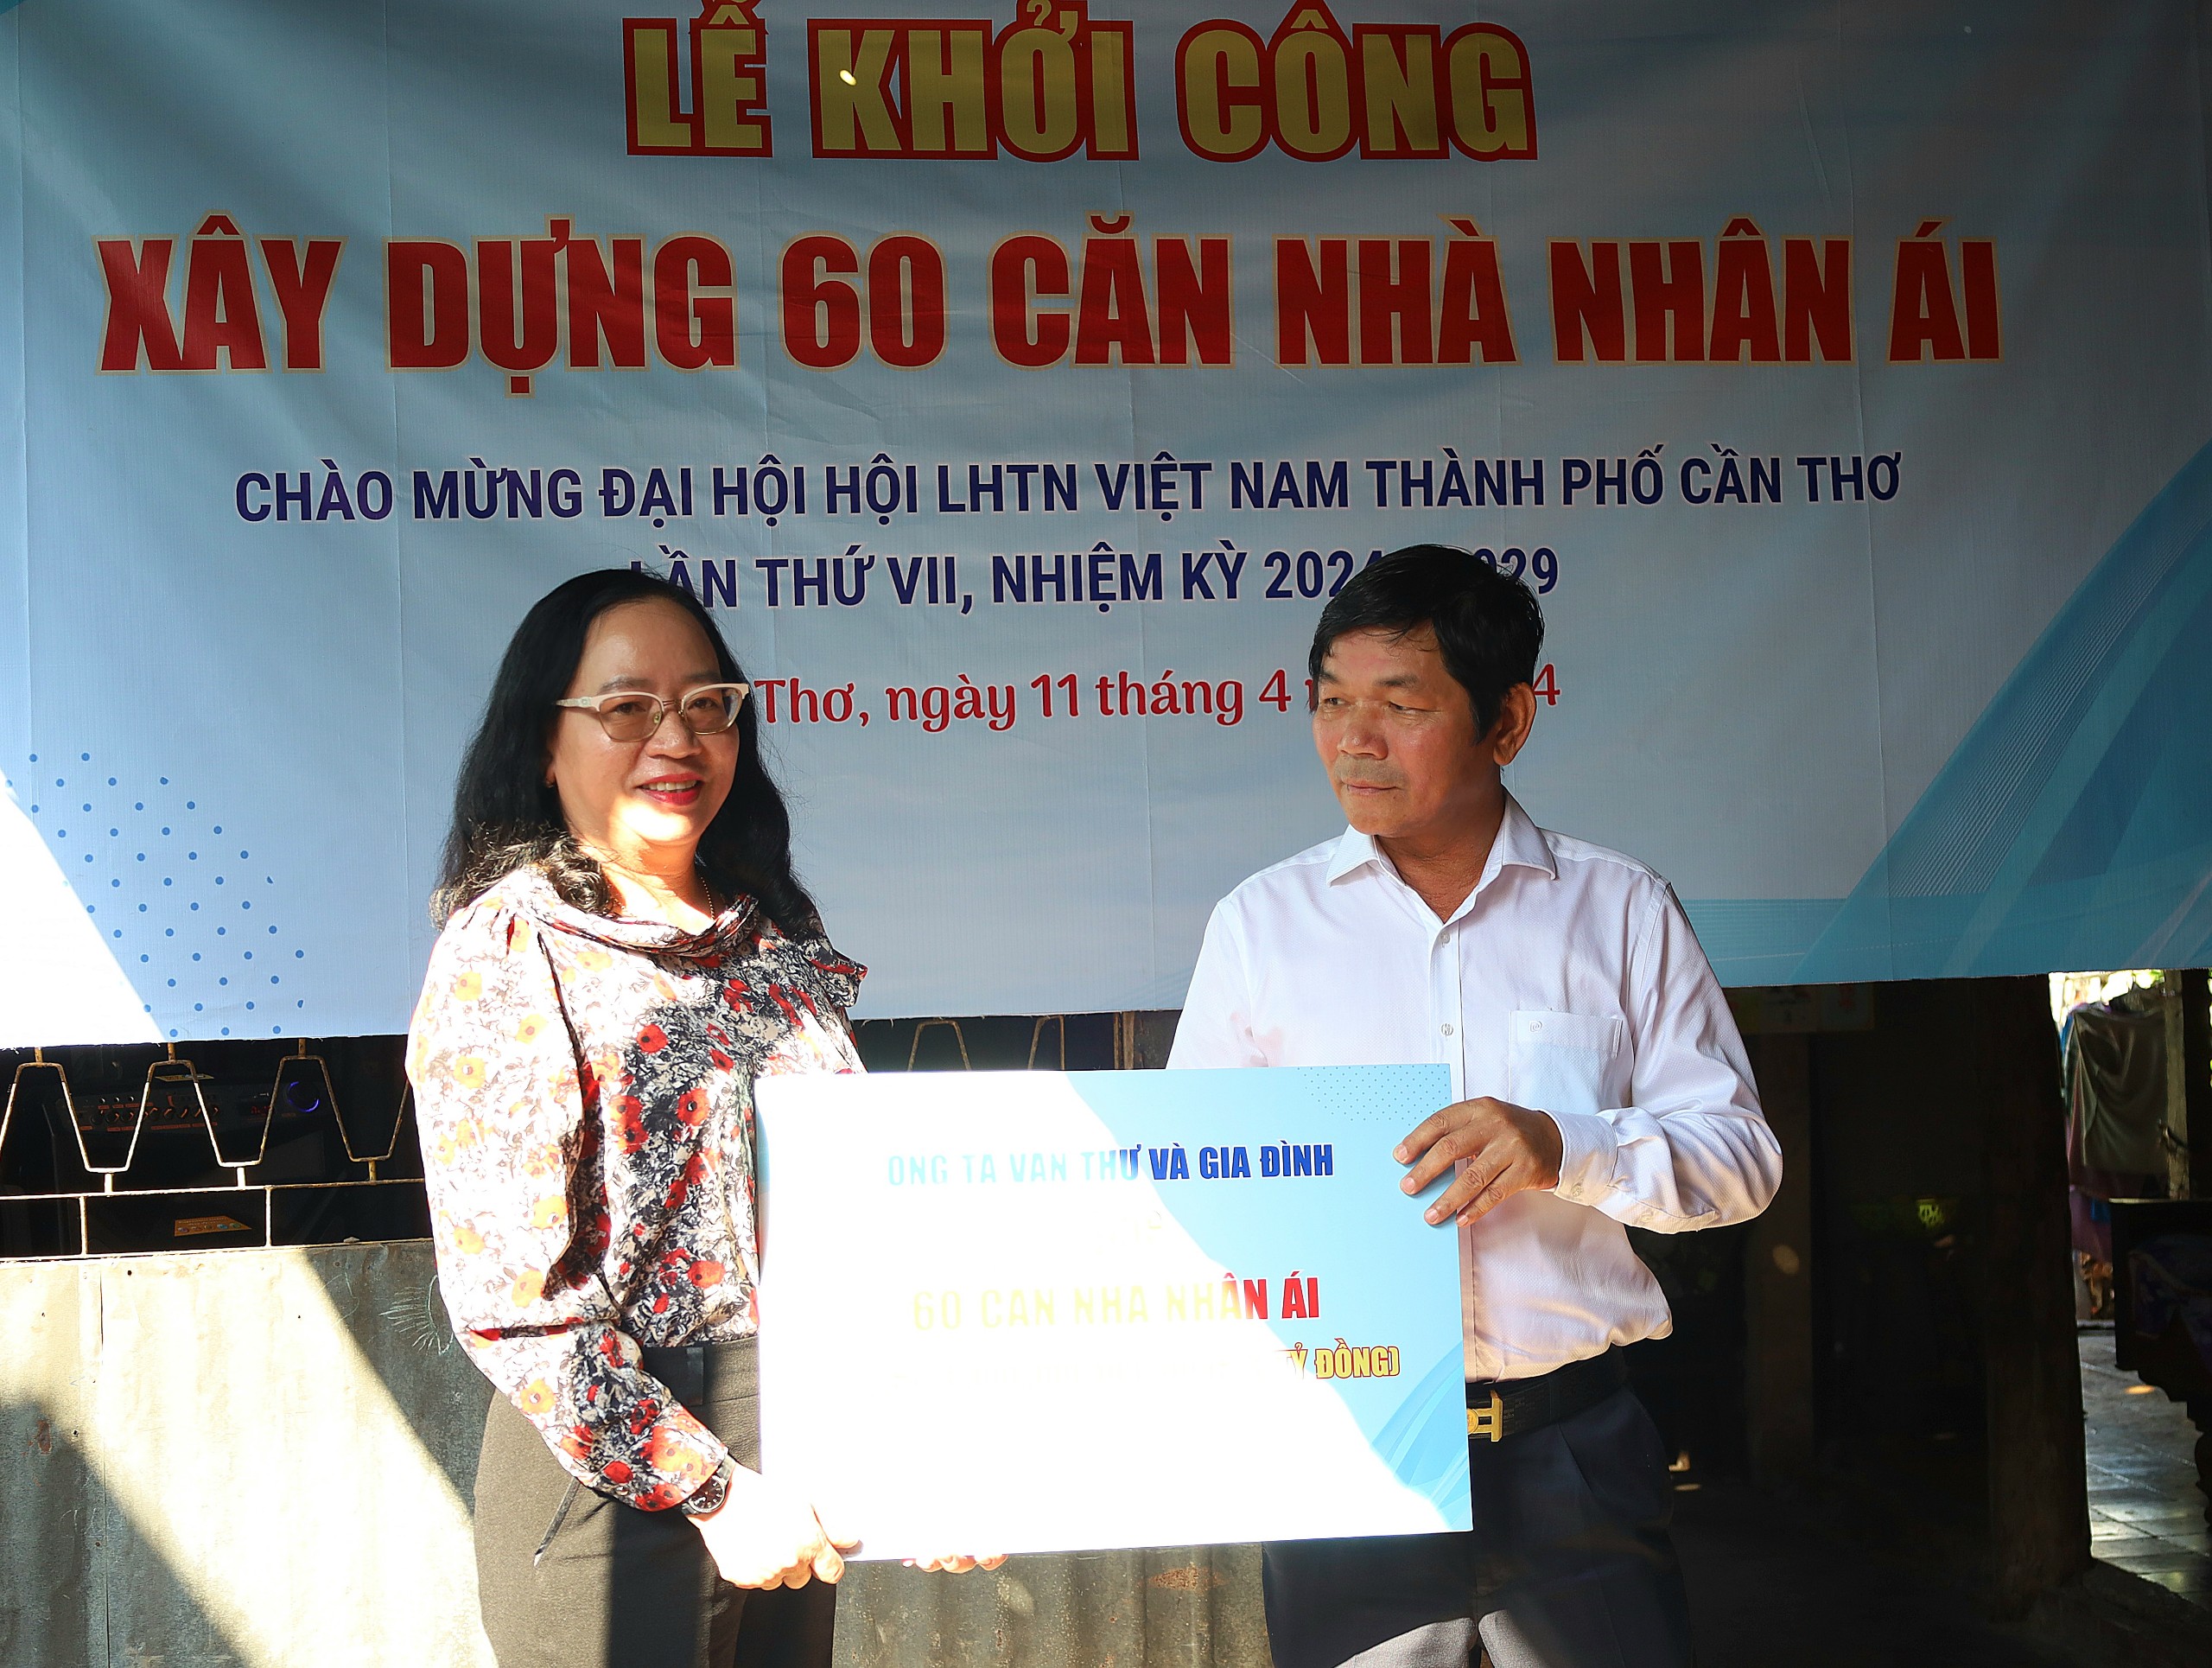 Bà Nguyễn Thúy Hằng – Phó Chủ tịch UB MTTQ VN TP. Cần Thơ nhận bảng tượng trưng 60 căn Nhà Nhân ái từ đơn vị tài trợ.